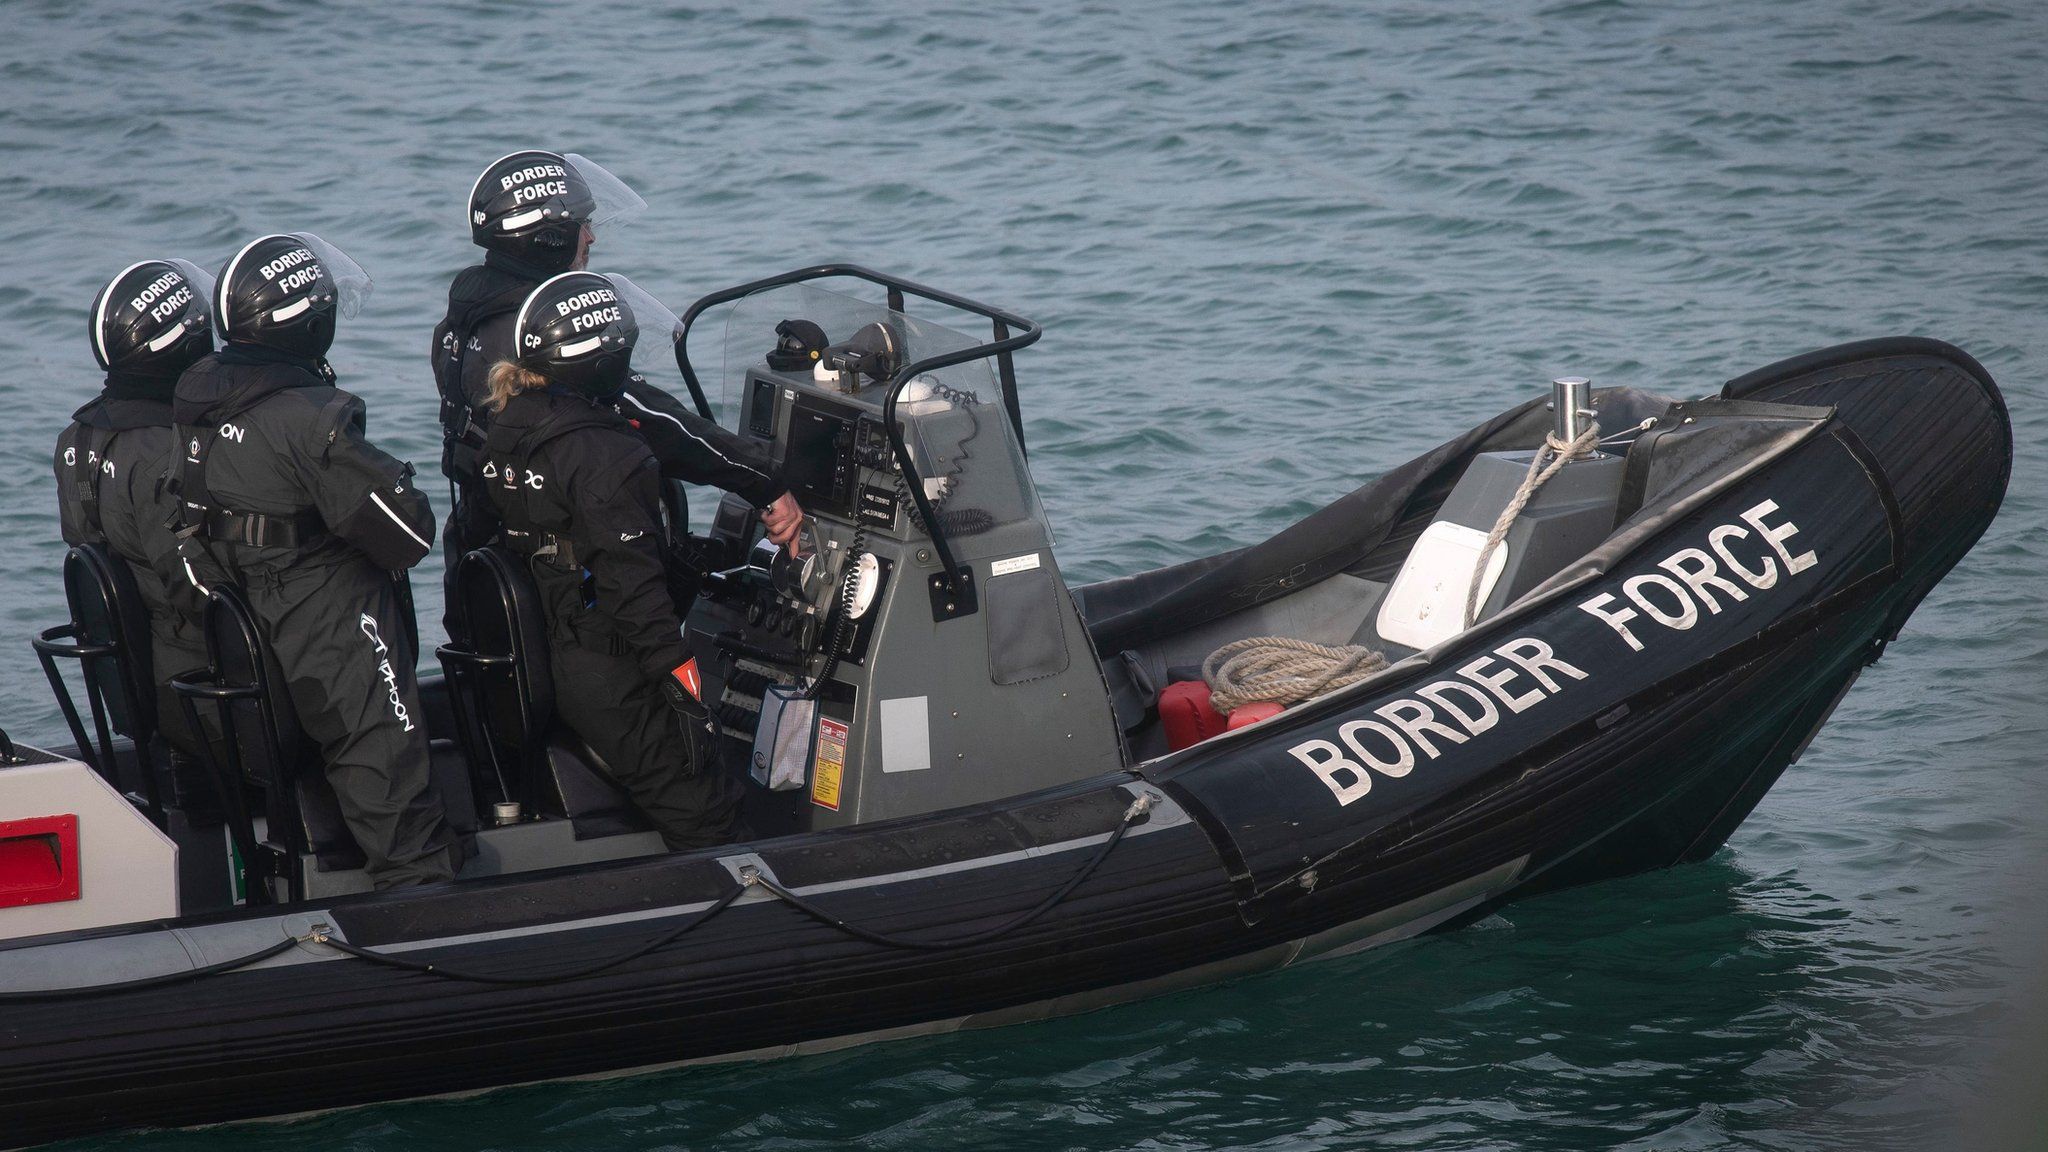 Border Force boat